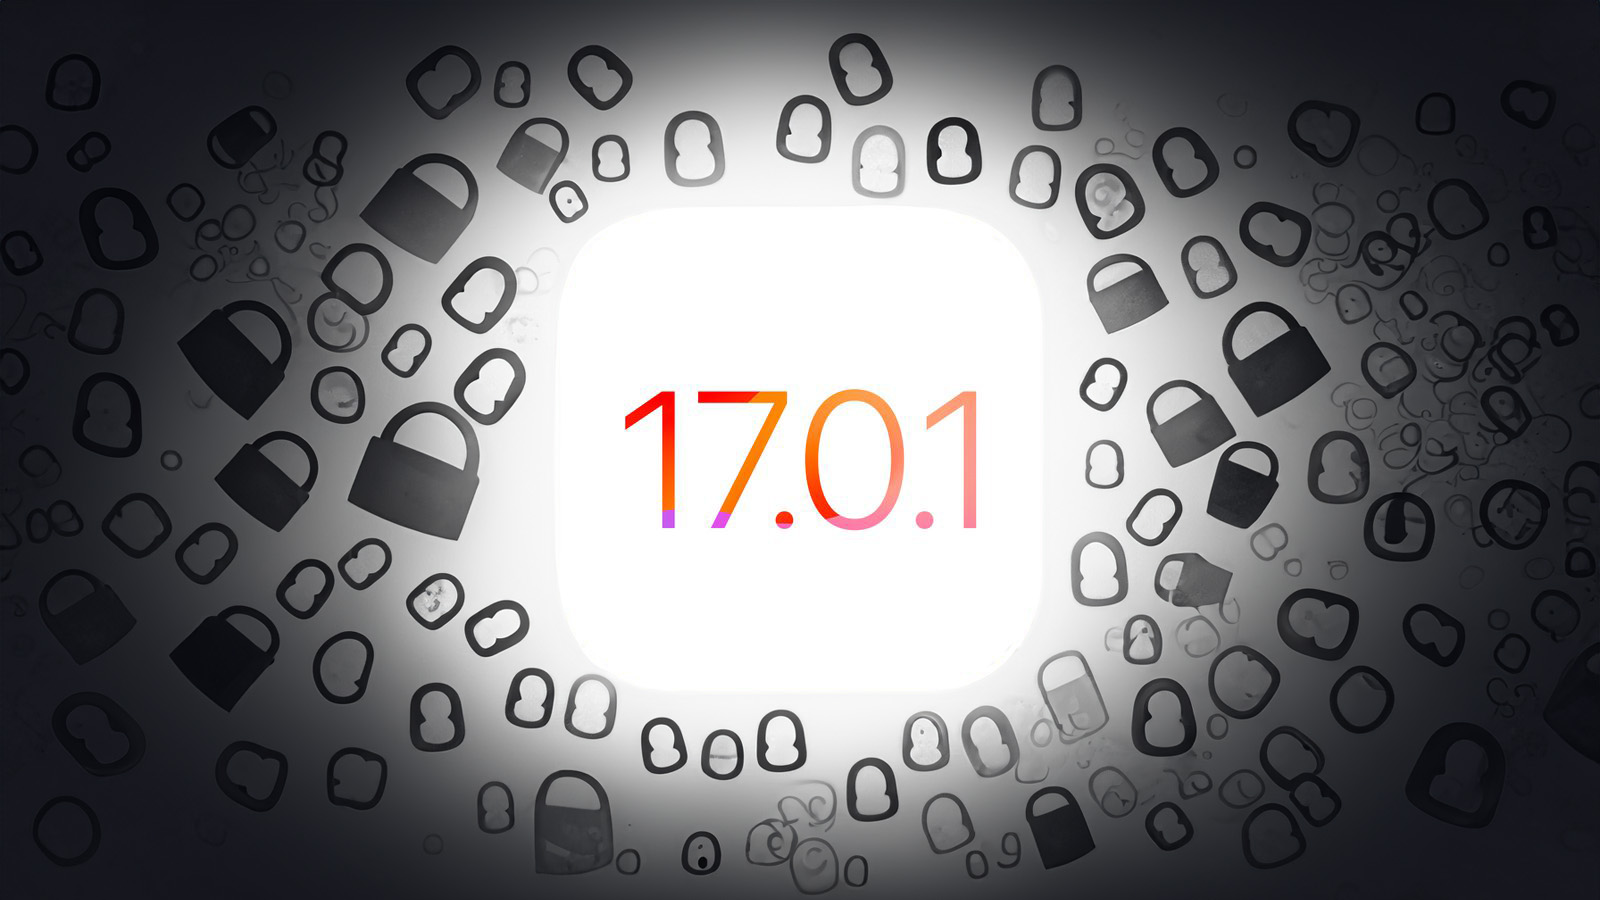 De iPhoneIslam.com, una imagen de la pantalla de bloqueo que muestra la fecha 17 07 01.